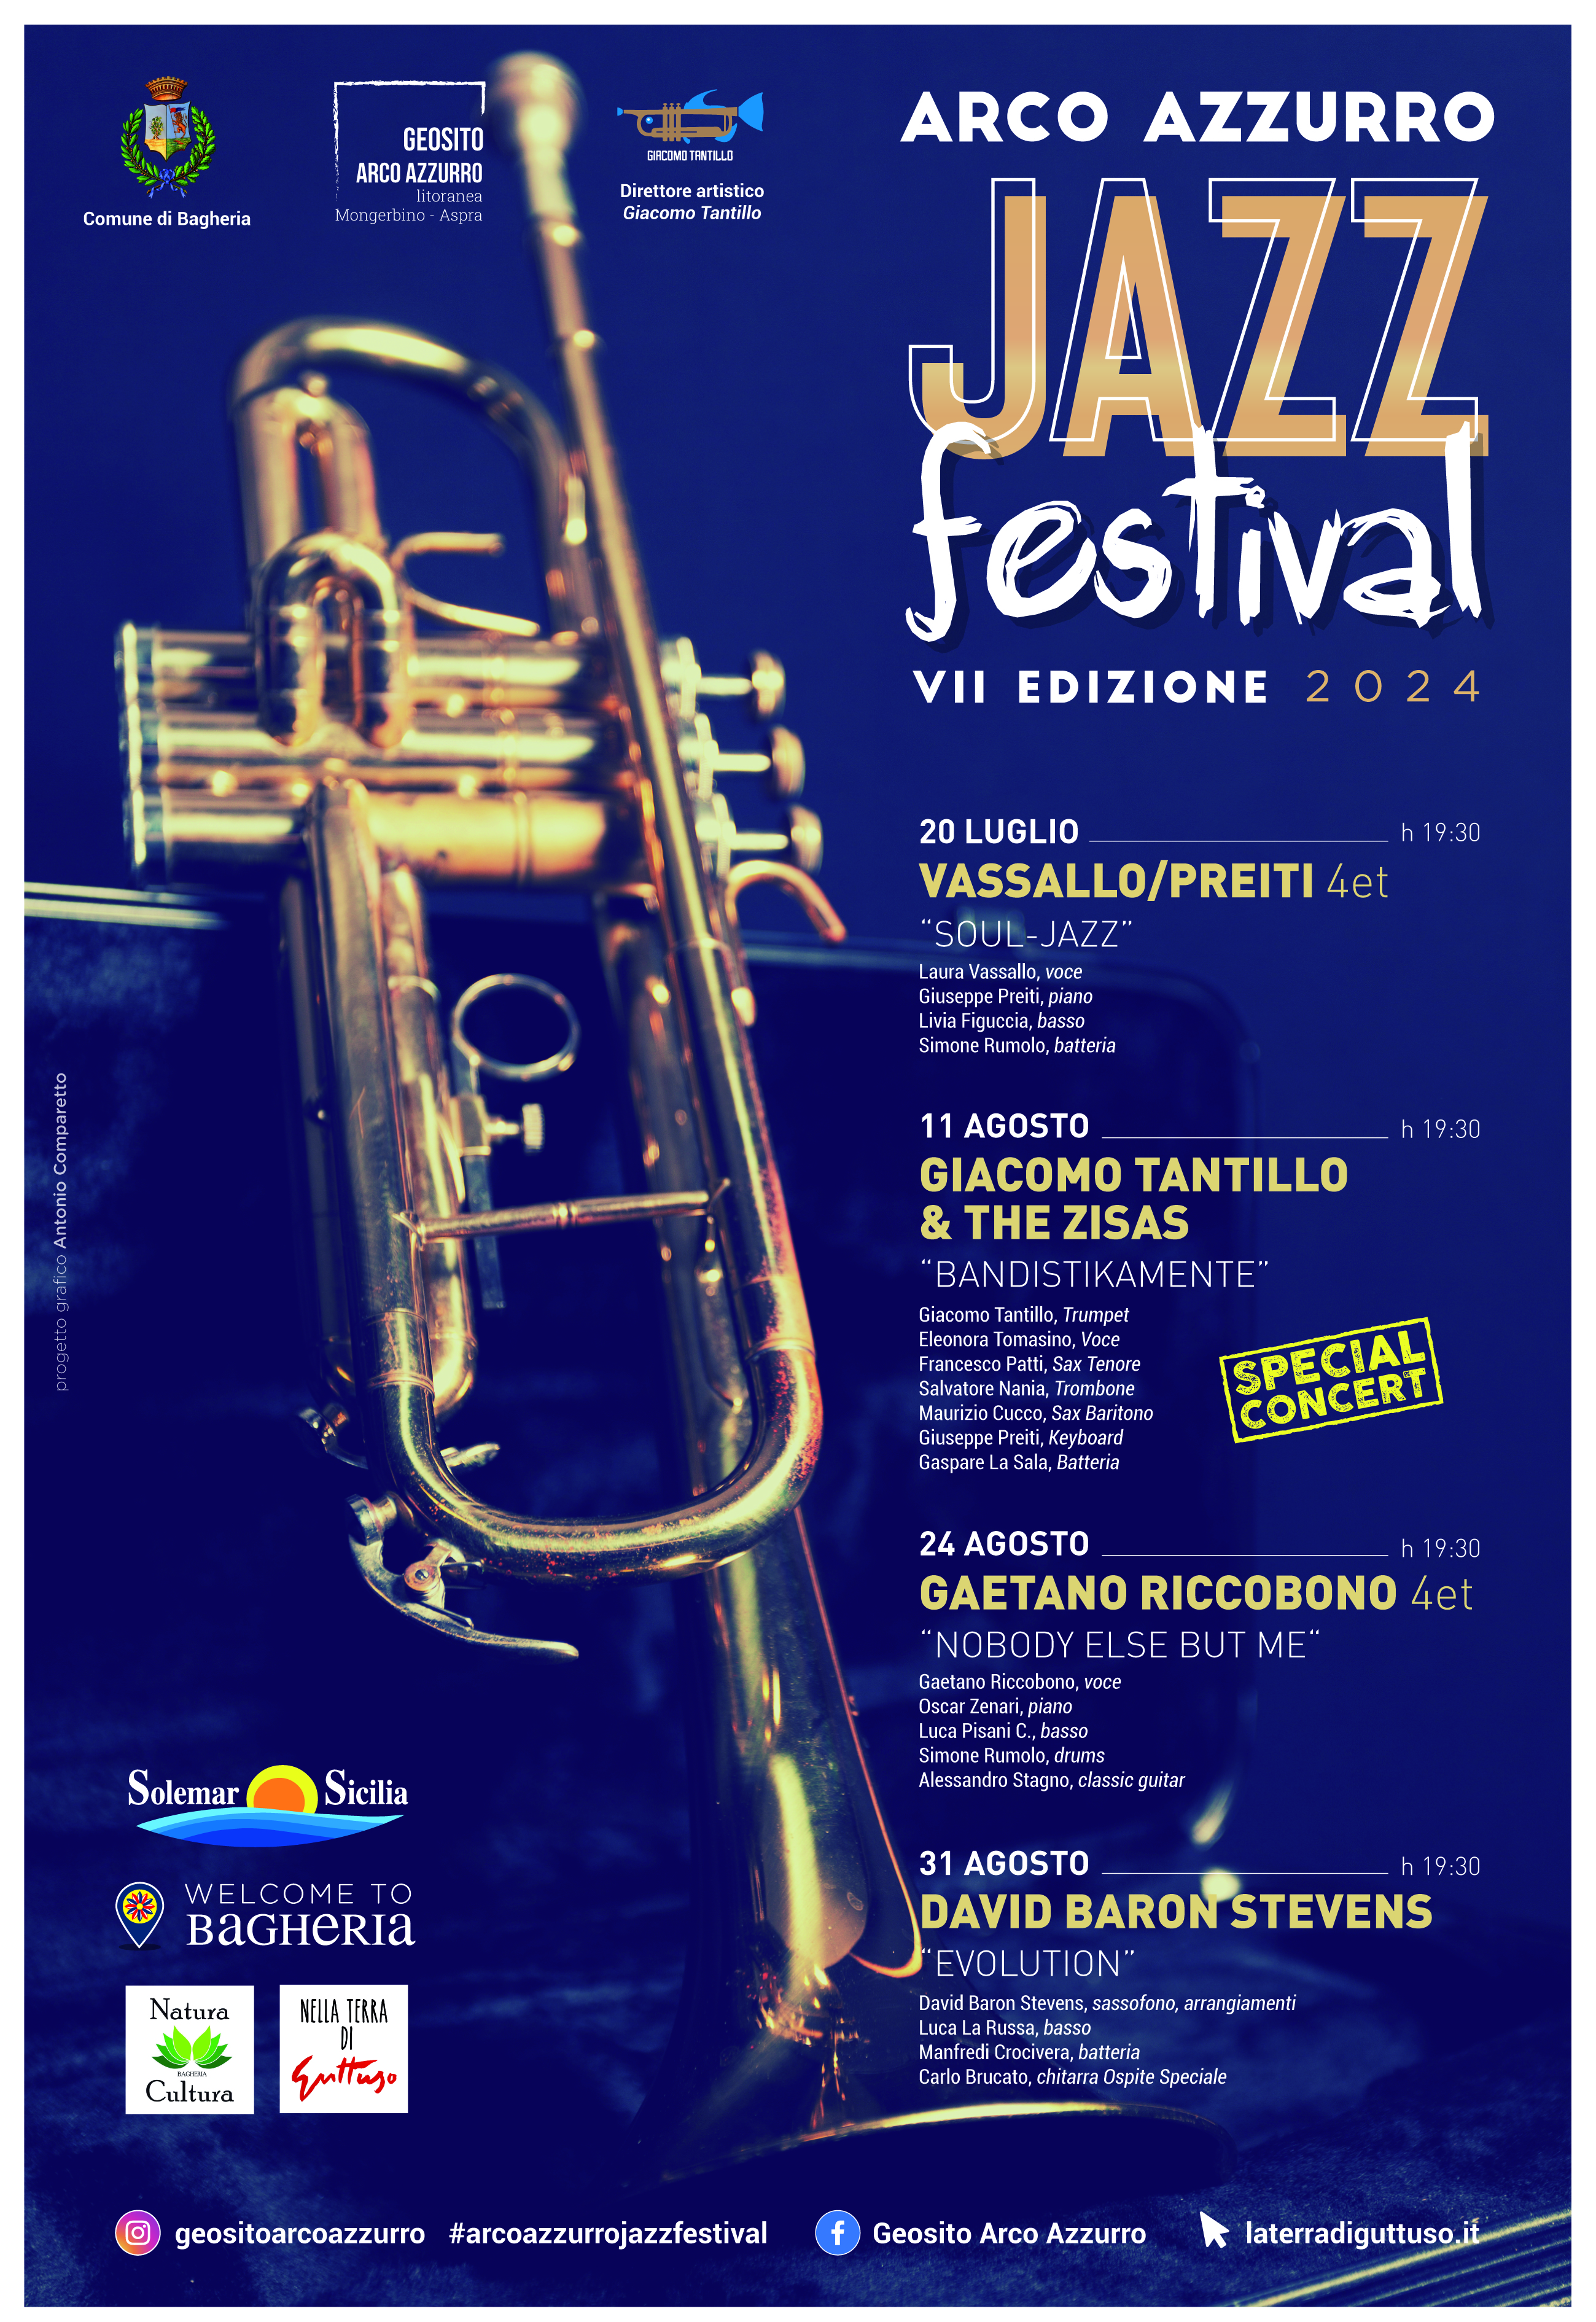 Settima Edizione dell’ “Arco Azzurro Festival Jazz”. Musica al tramonto.